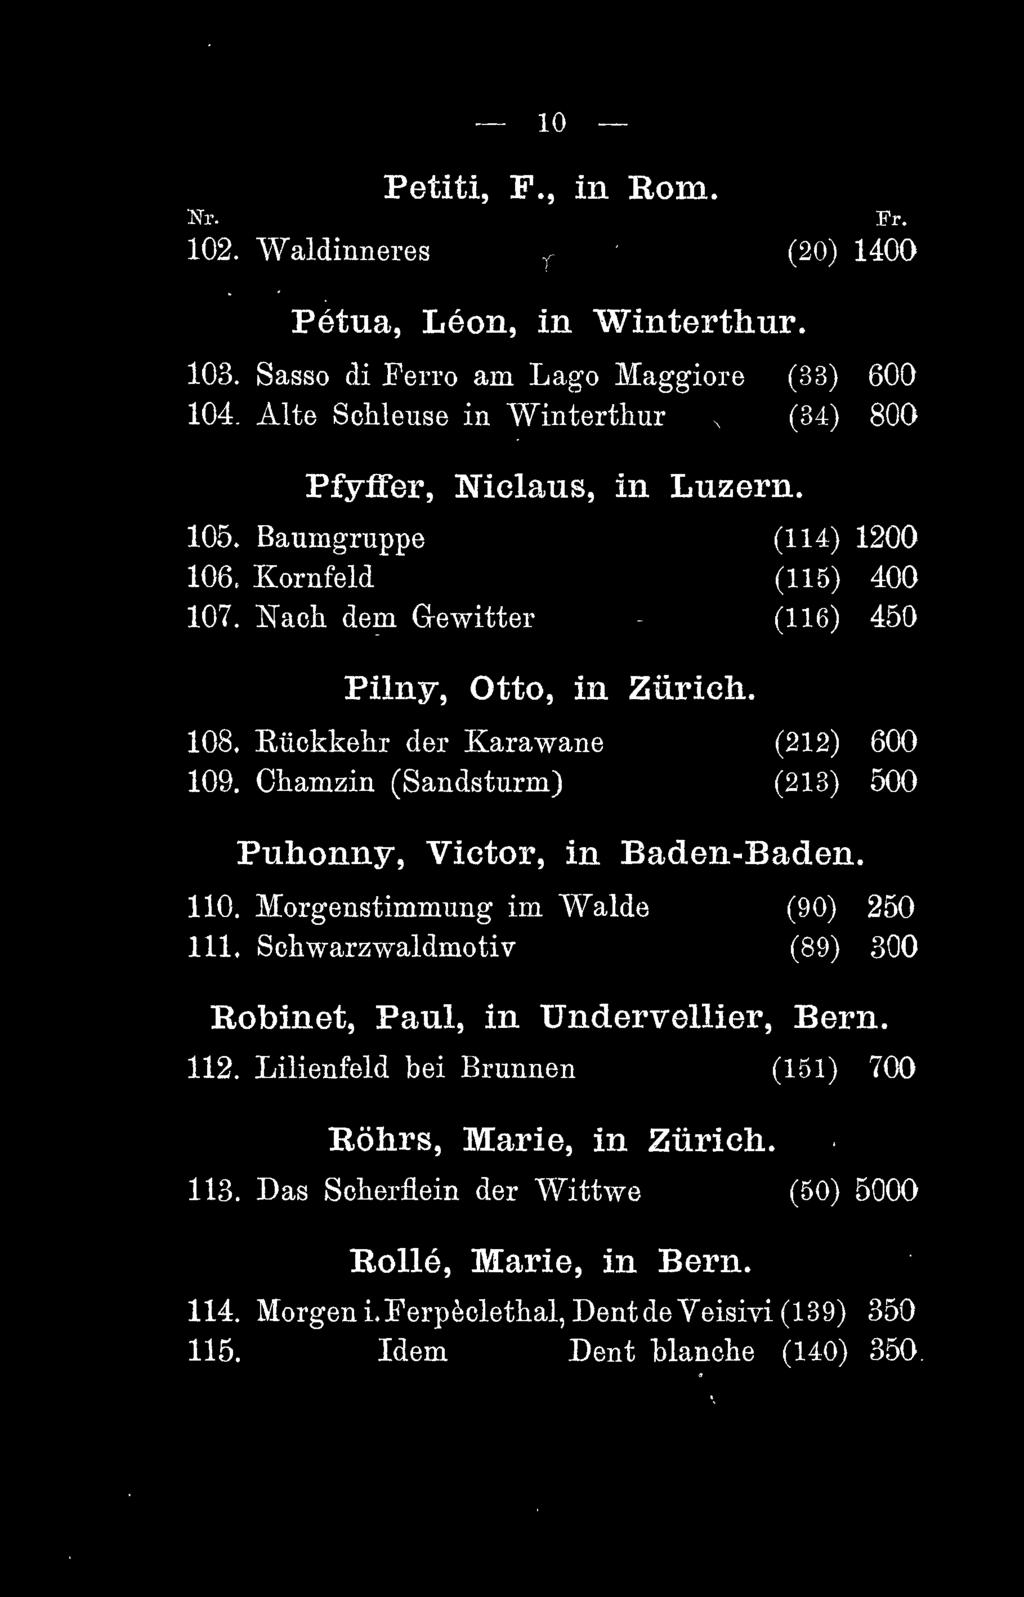 Kückkehr der Karawane (212) 600 109. Chamzin (Sandsturm) (213) 500 Puhonny, Victor, in Baden-Baden. 110. Morgenstimmung im Walde (90) 250 111.